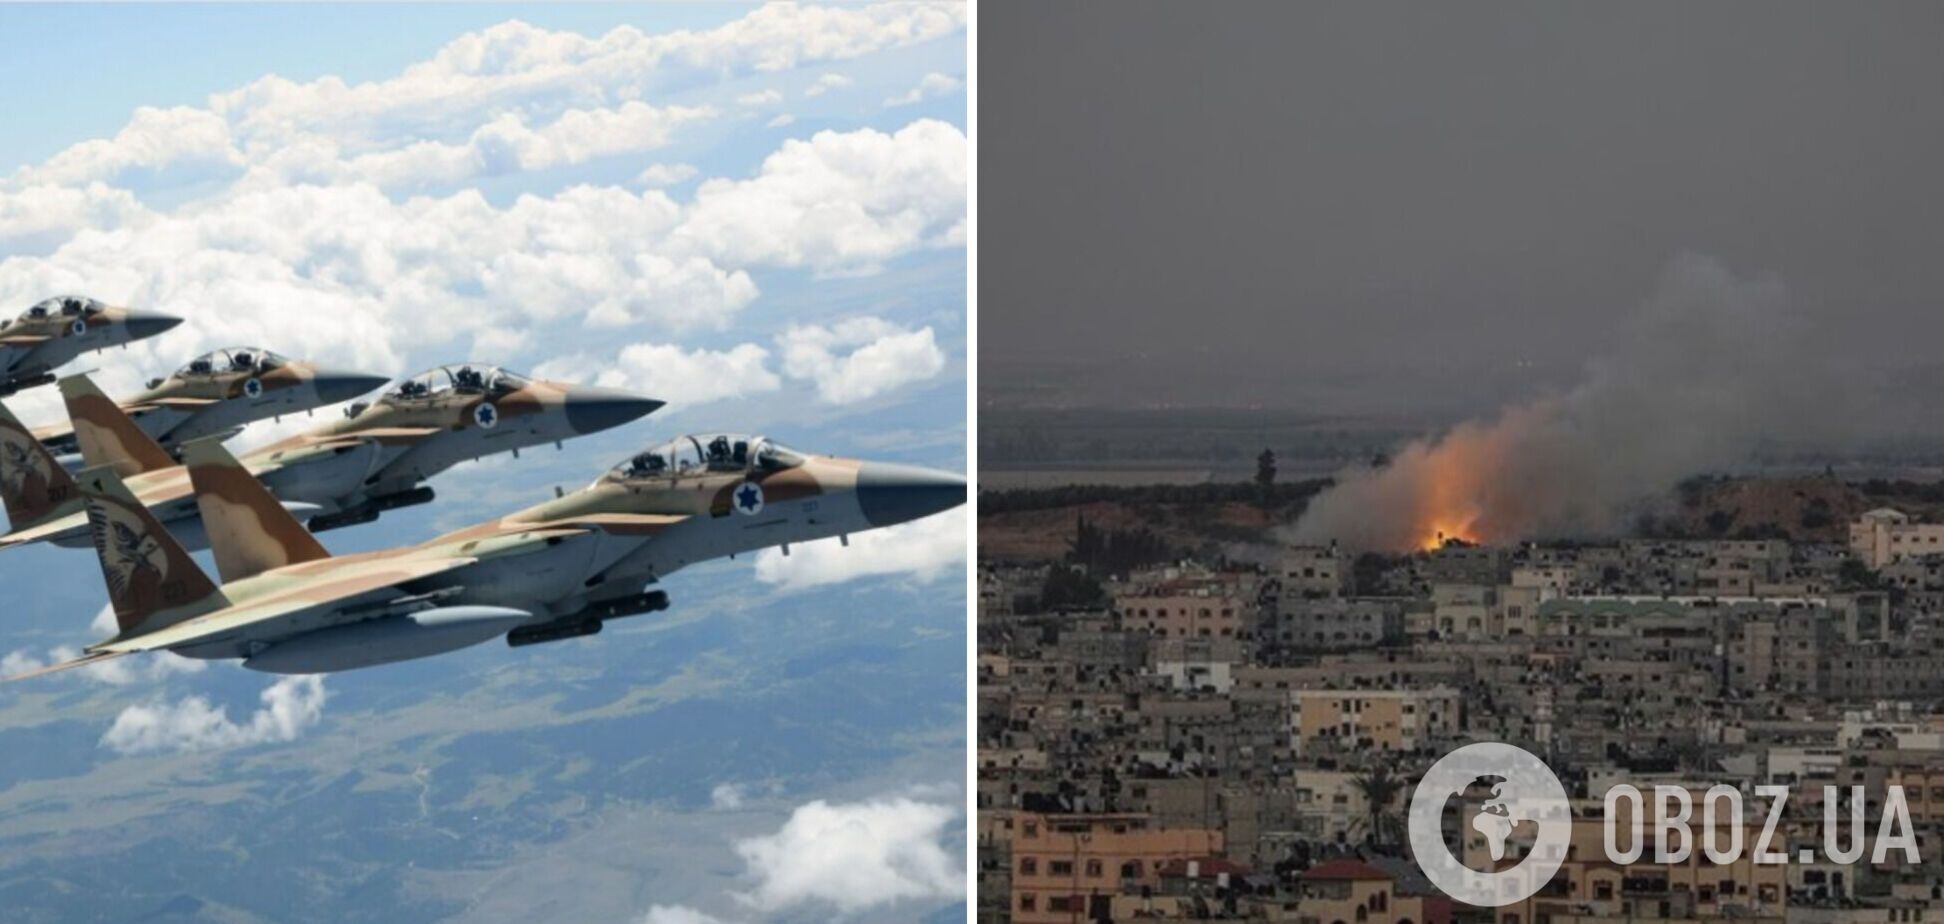 Ізраїль завдав ударів по сектору Гази, розпочавши операцію 'Щит та стріла': ліквідовано командирів 'Ісламського джихаду'